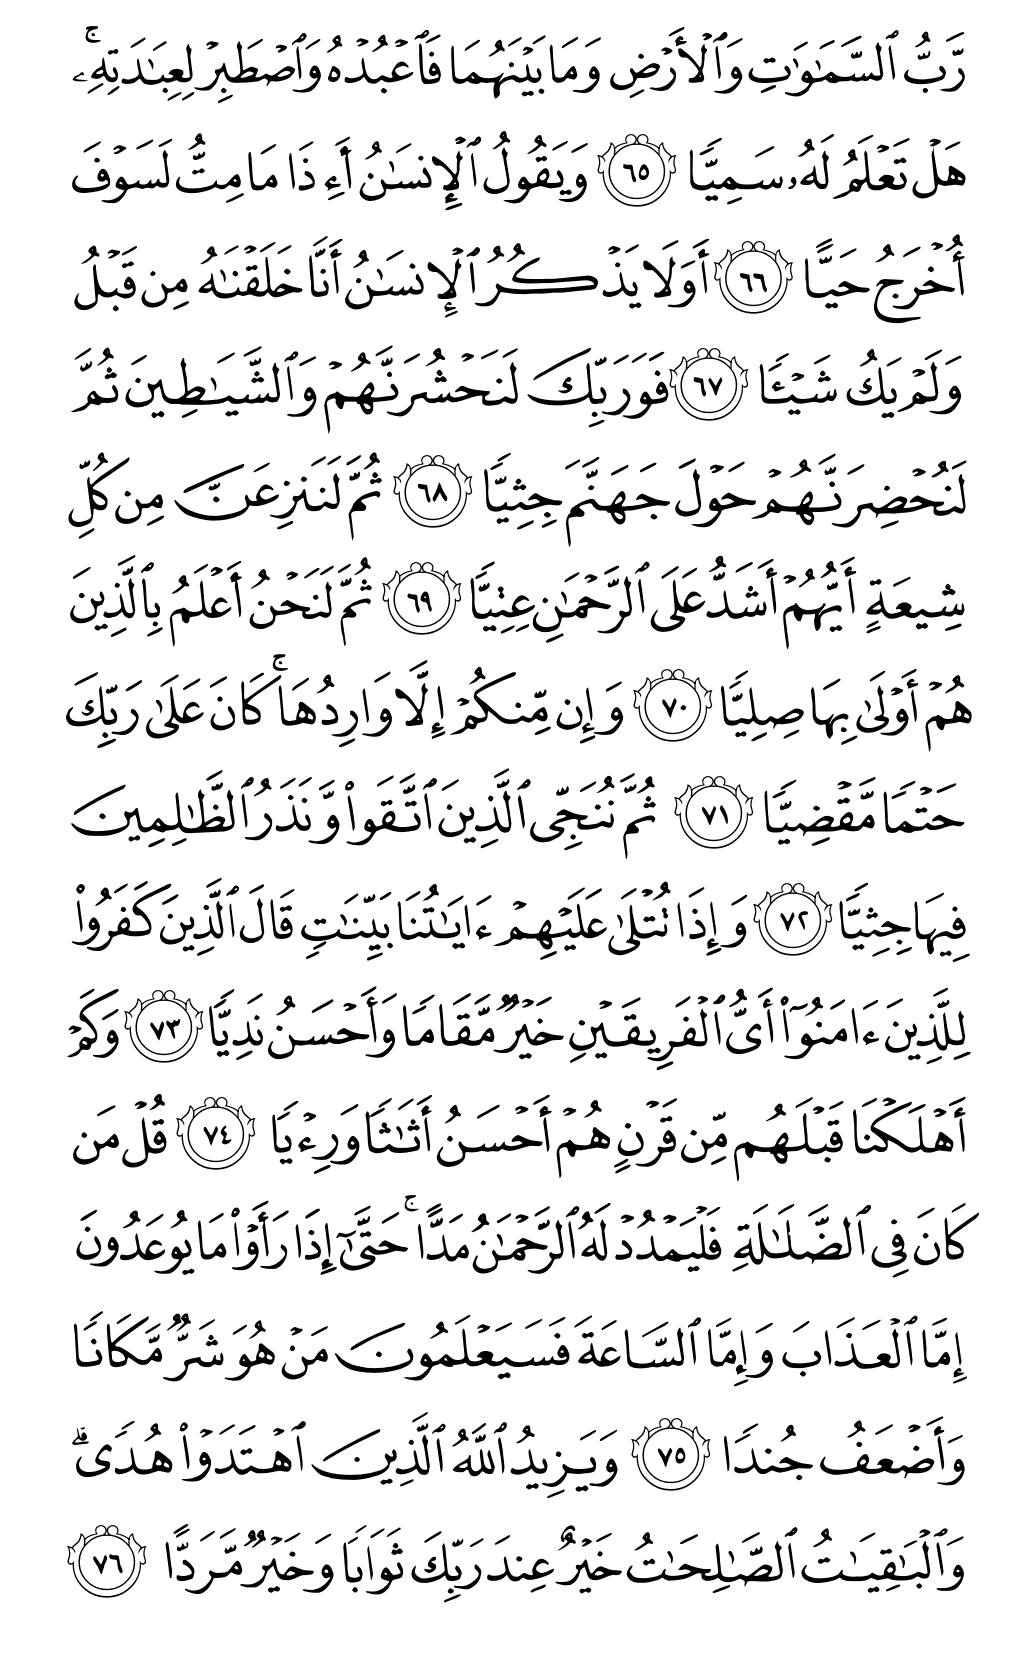 الصفحة رقم 310 من القرآن الكريم